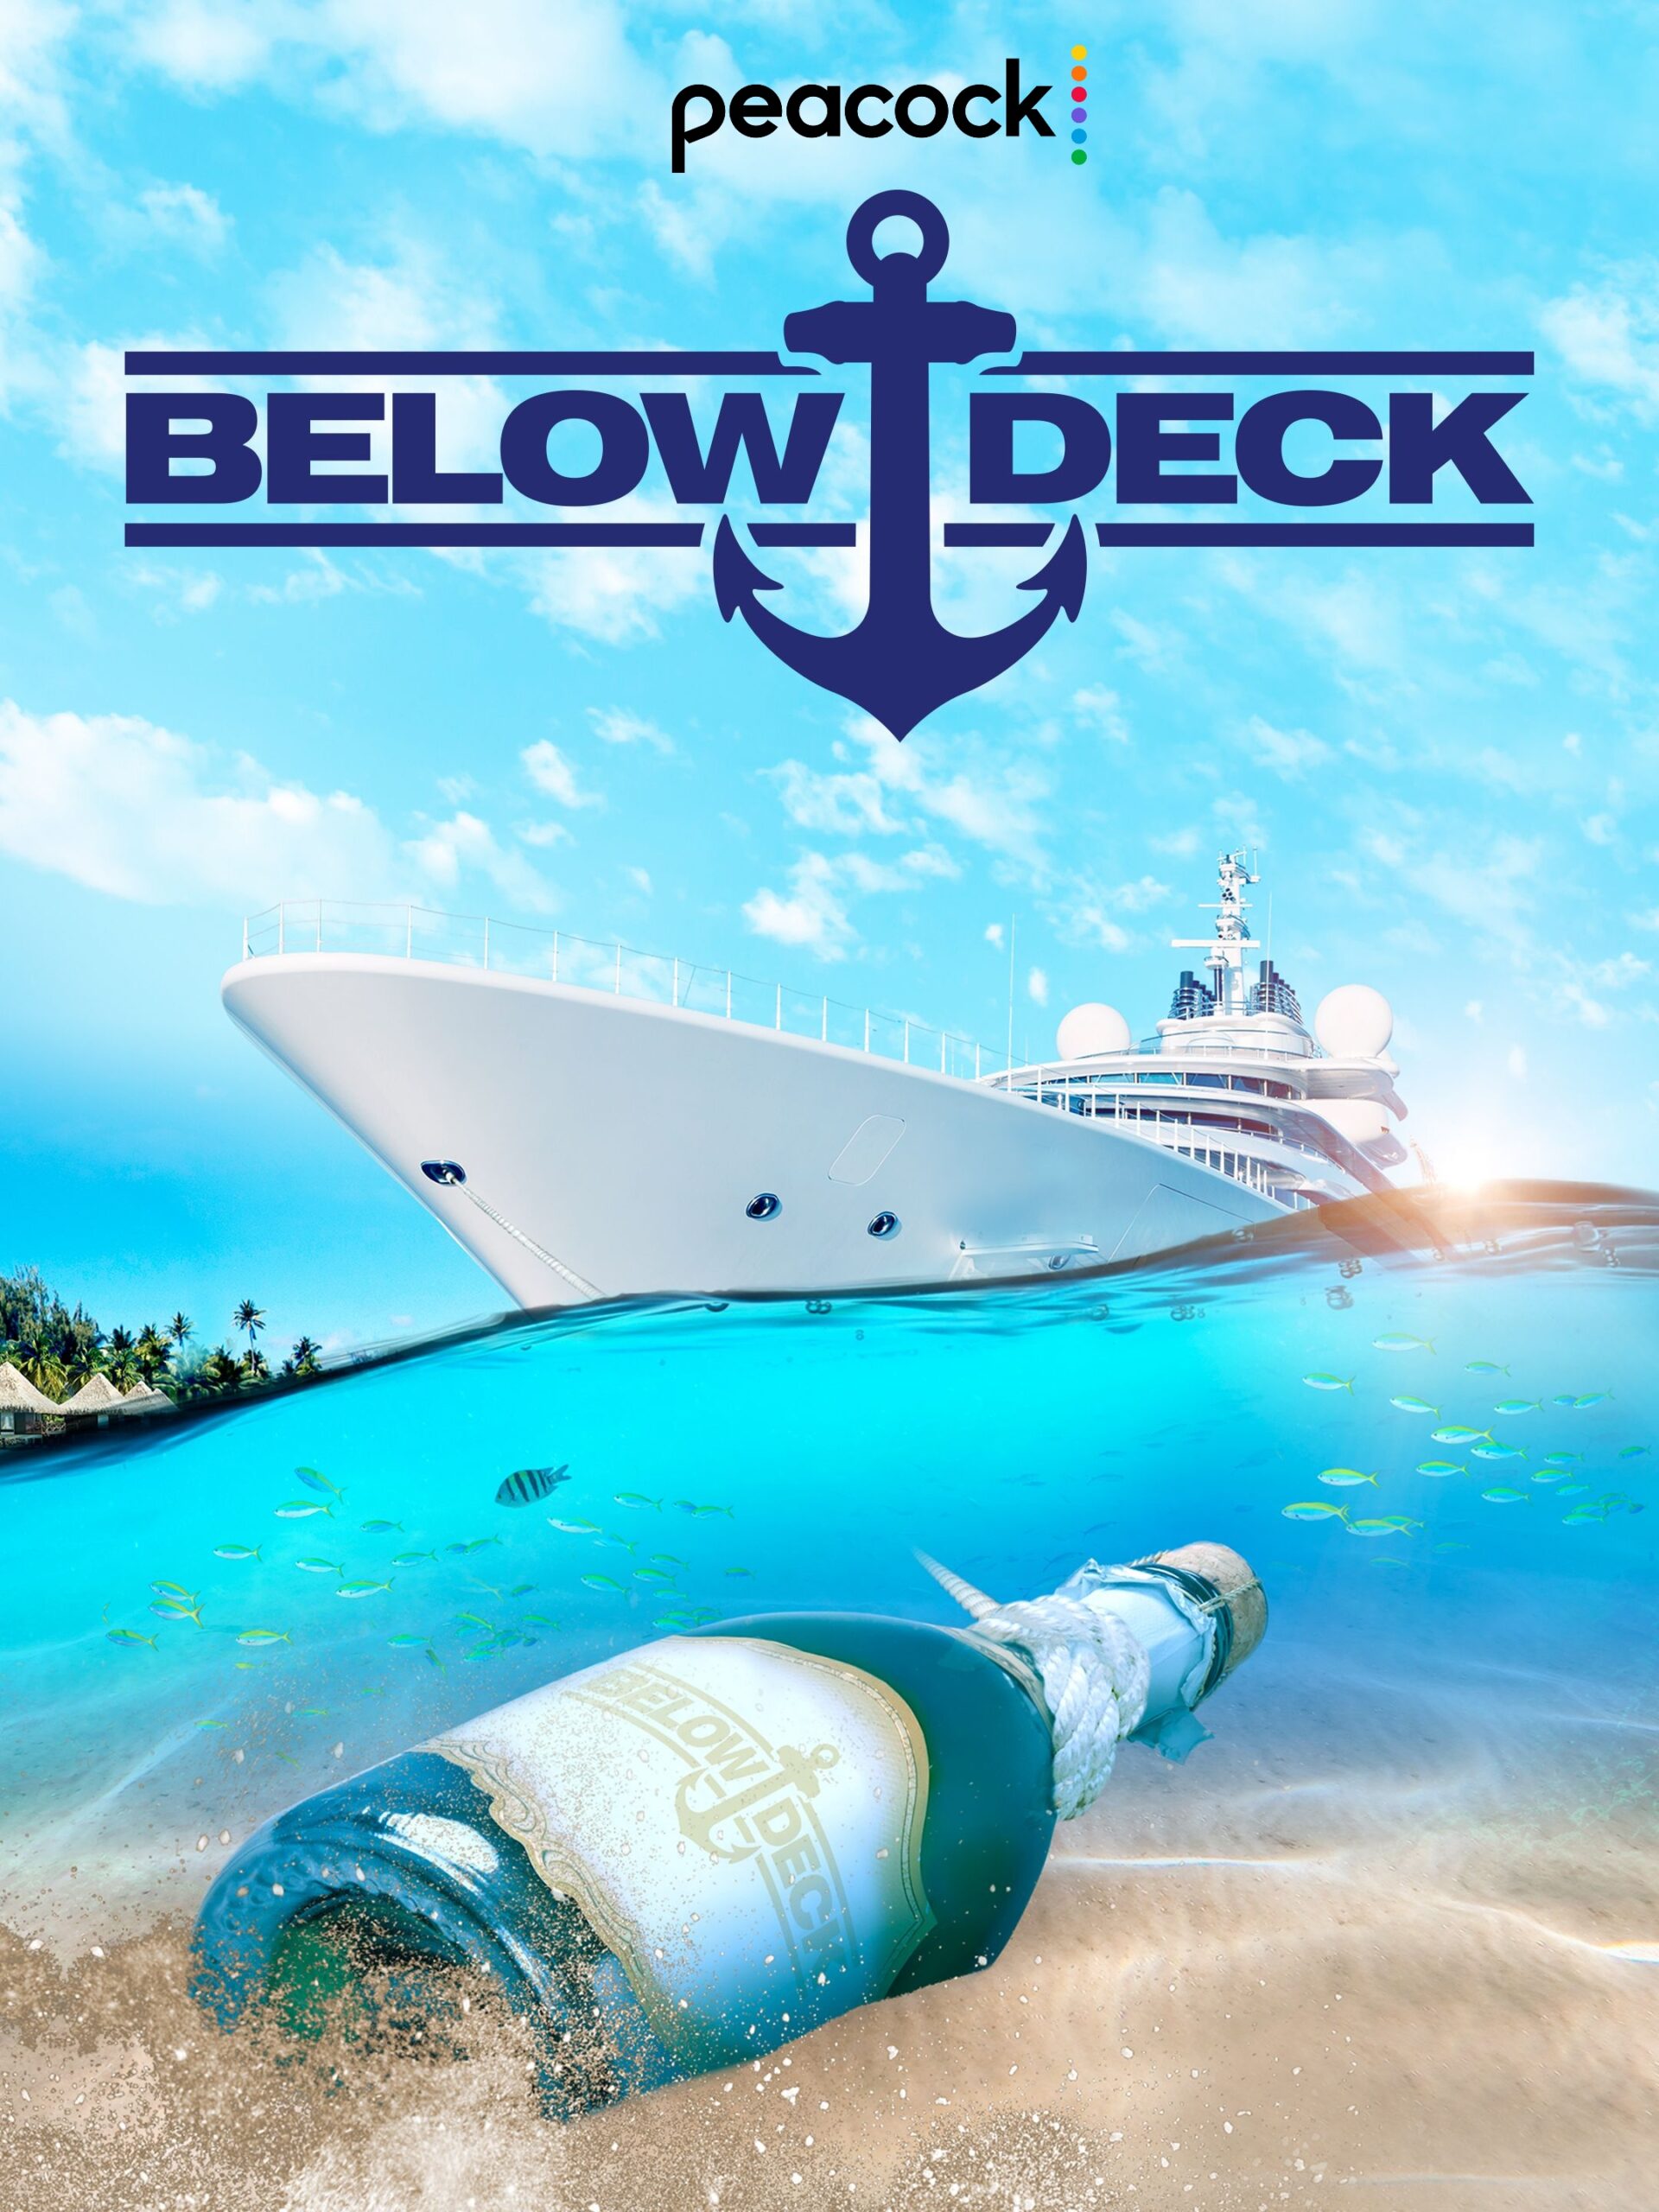 Is “Below Deck Down Under Season 1” on Peacock